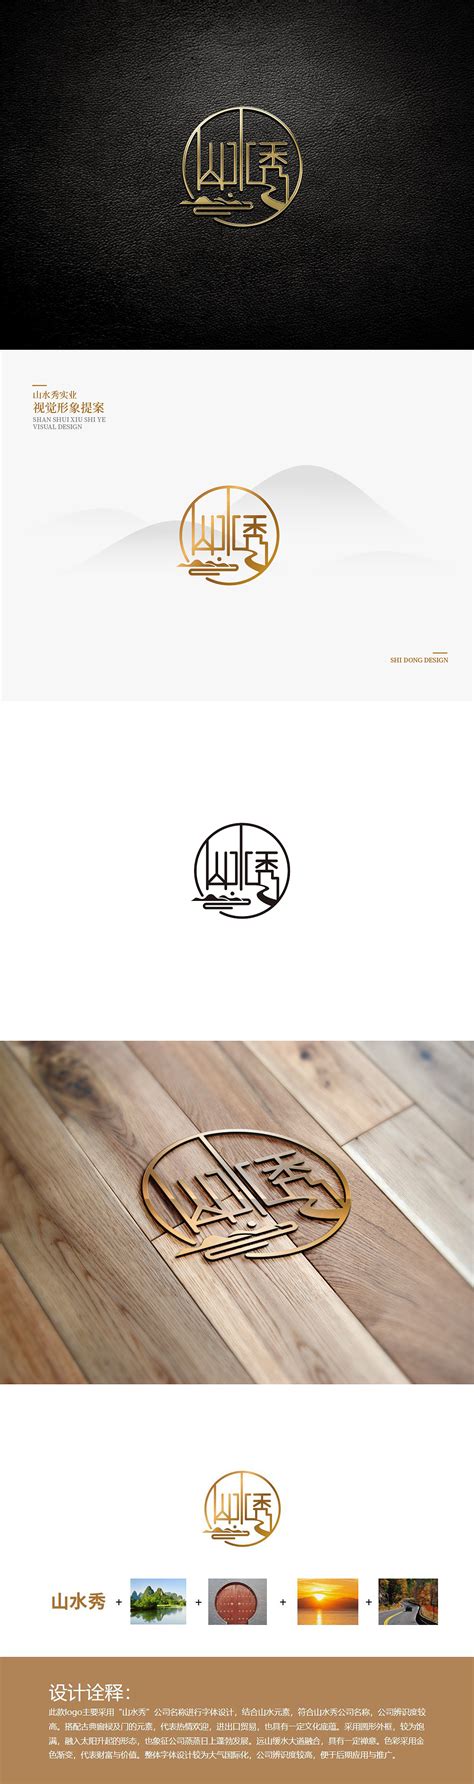 标志logo 中国风logo设计灵感 古典风格LOGO设计案例分享 复古风标志设计 经典商标设计 创意logo #海报# #海报设计# #广告 ...